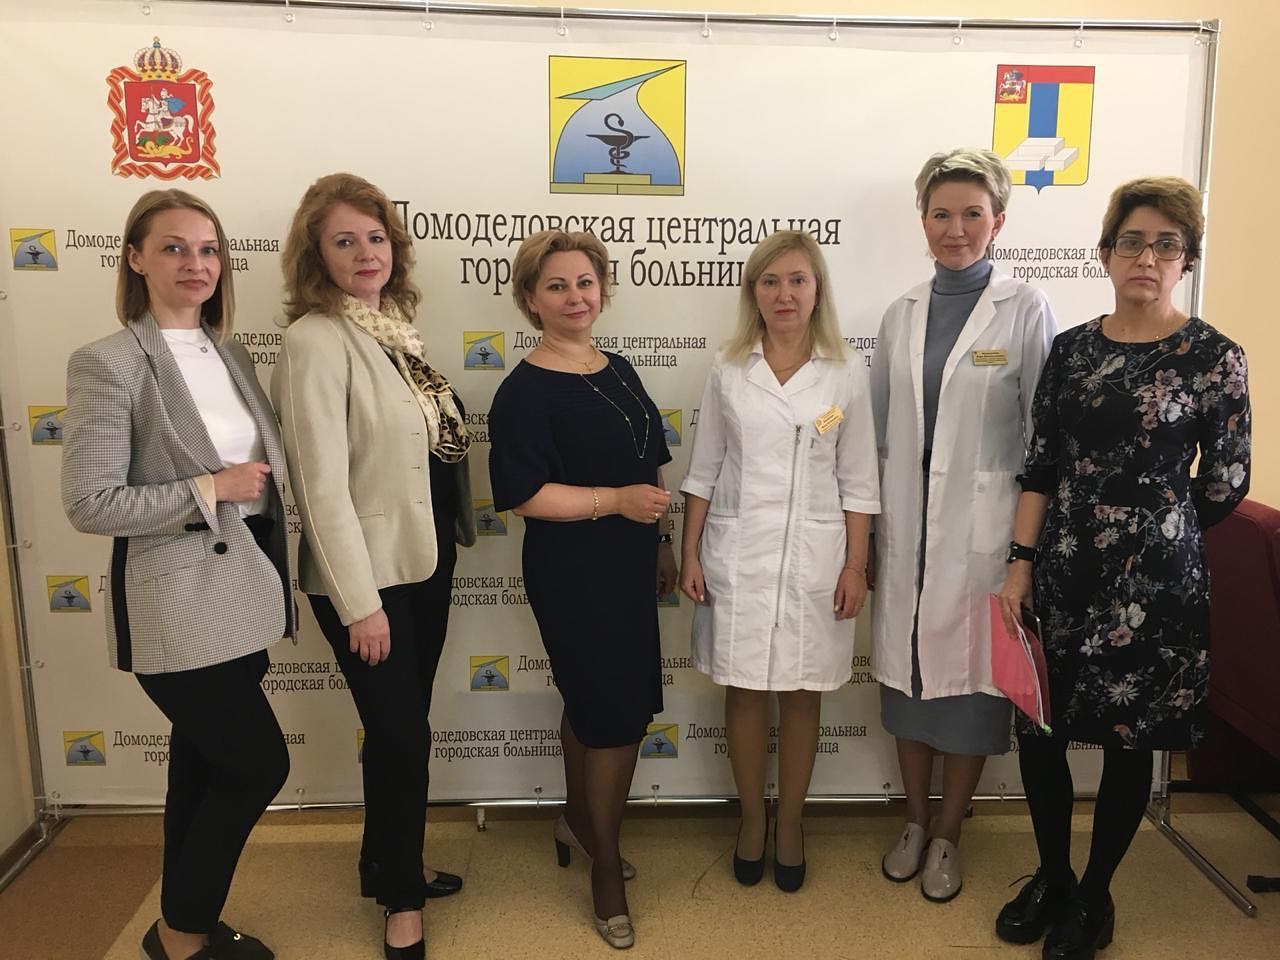 13 мая 2019 года в ГБУЗ МО «Домодедовская центральная городская больница» состоялась конференция в рамках областной программы вакцинопрофилактики папилломавирусной инфекции.